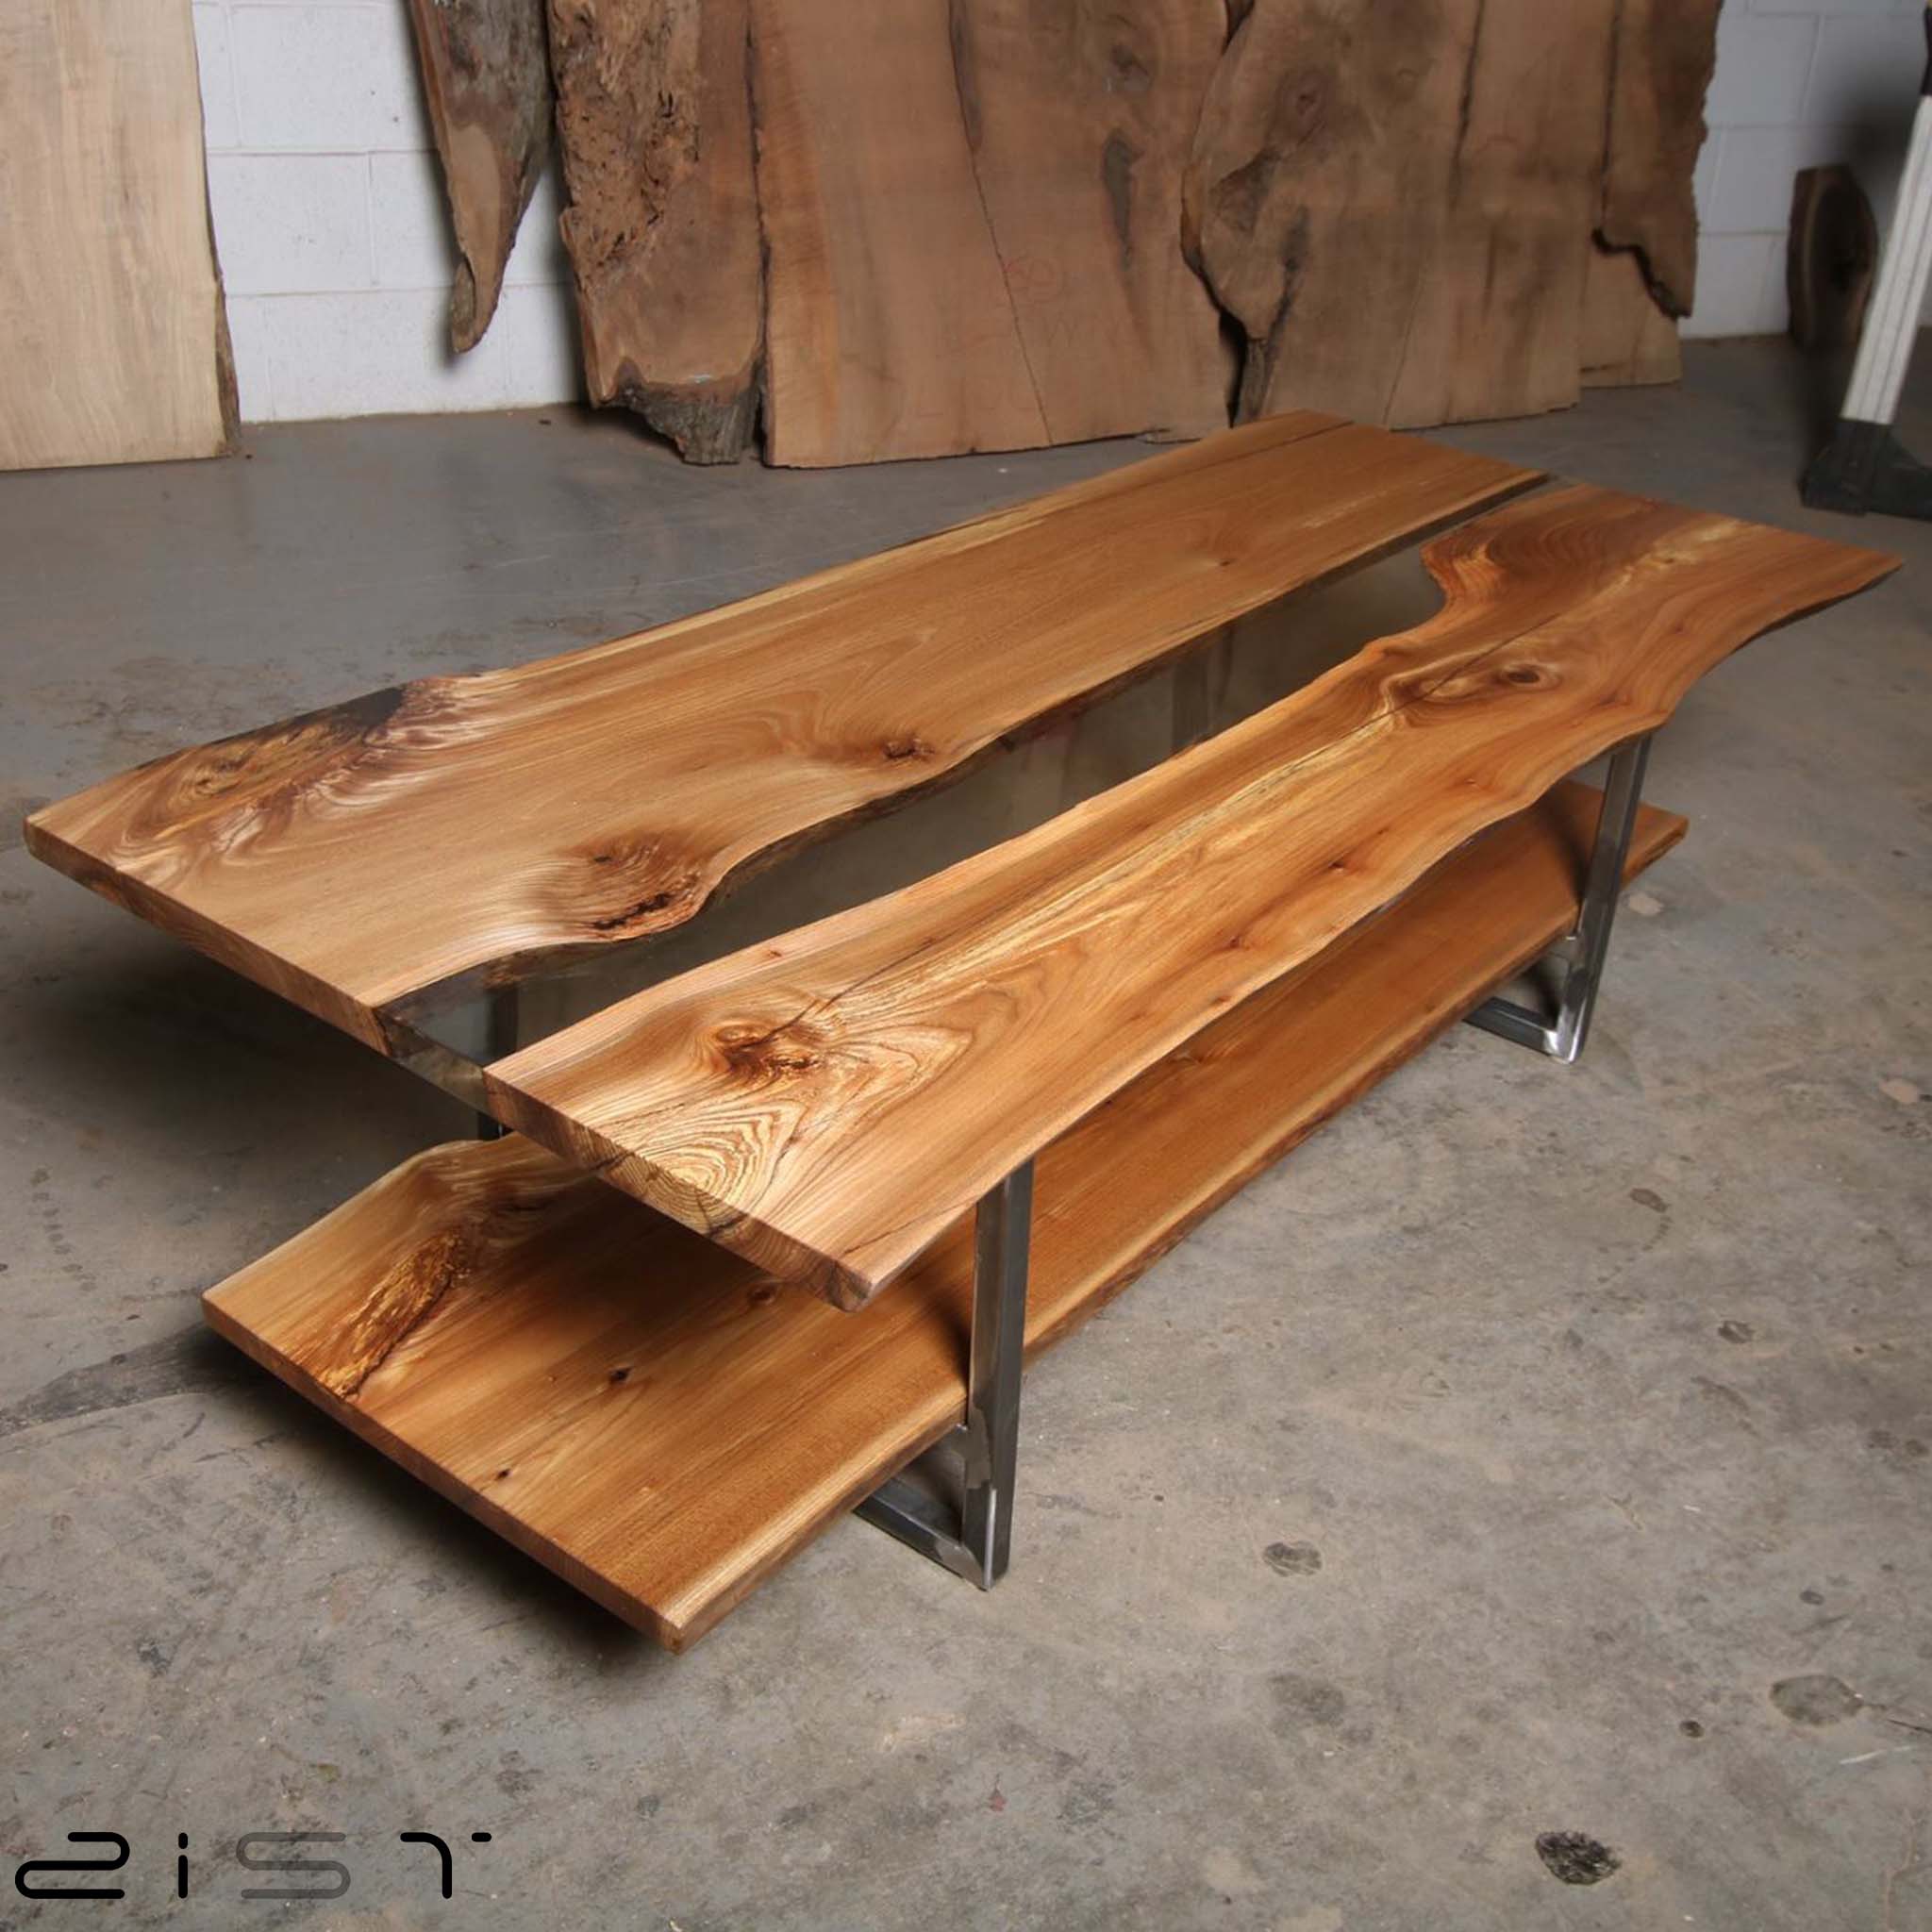 در این تصویر یک میز تلویزیون چوب و رزین را مشاهده میکنید